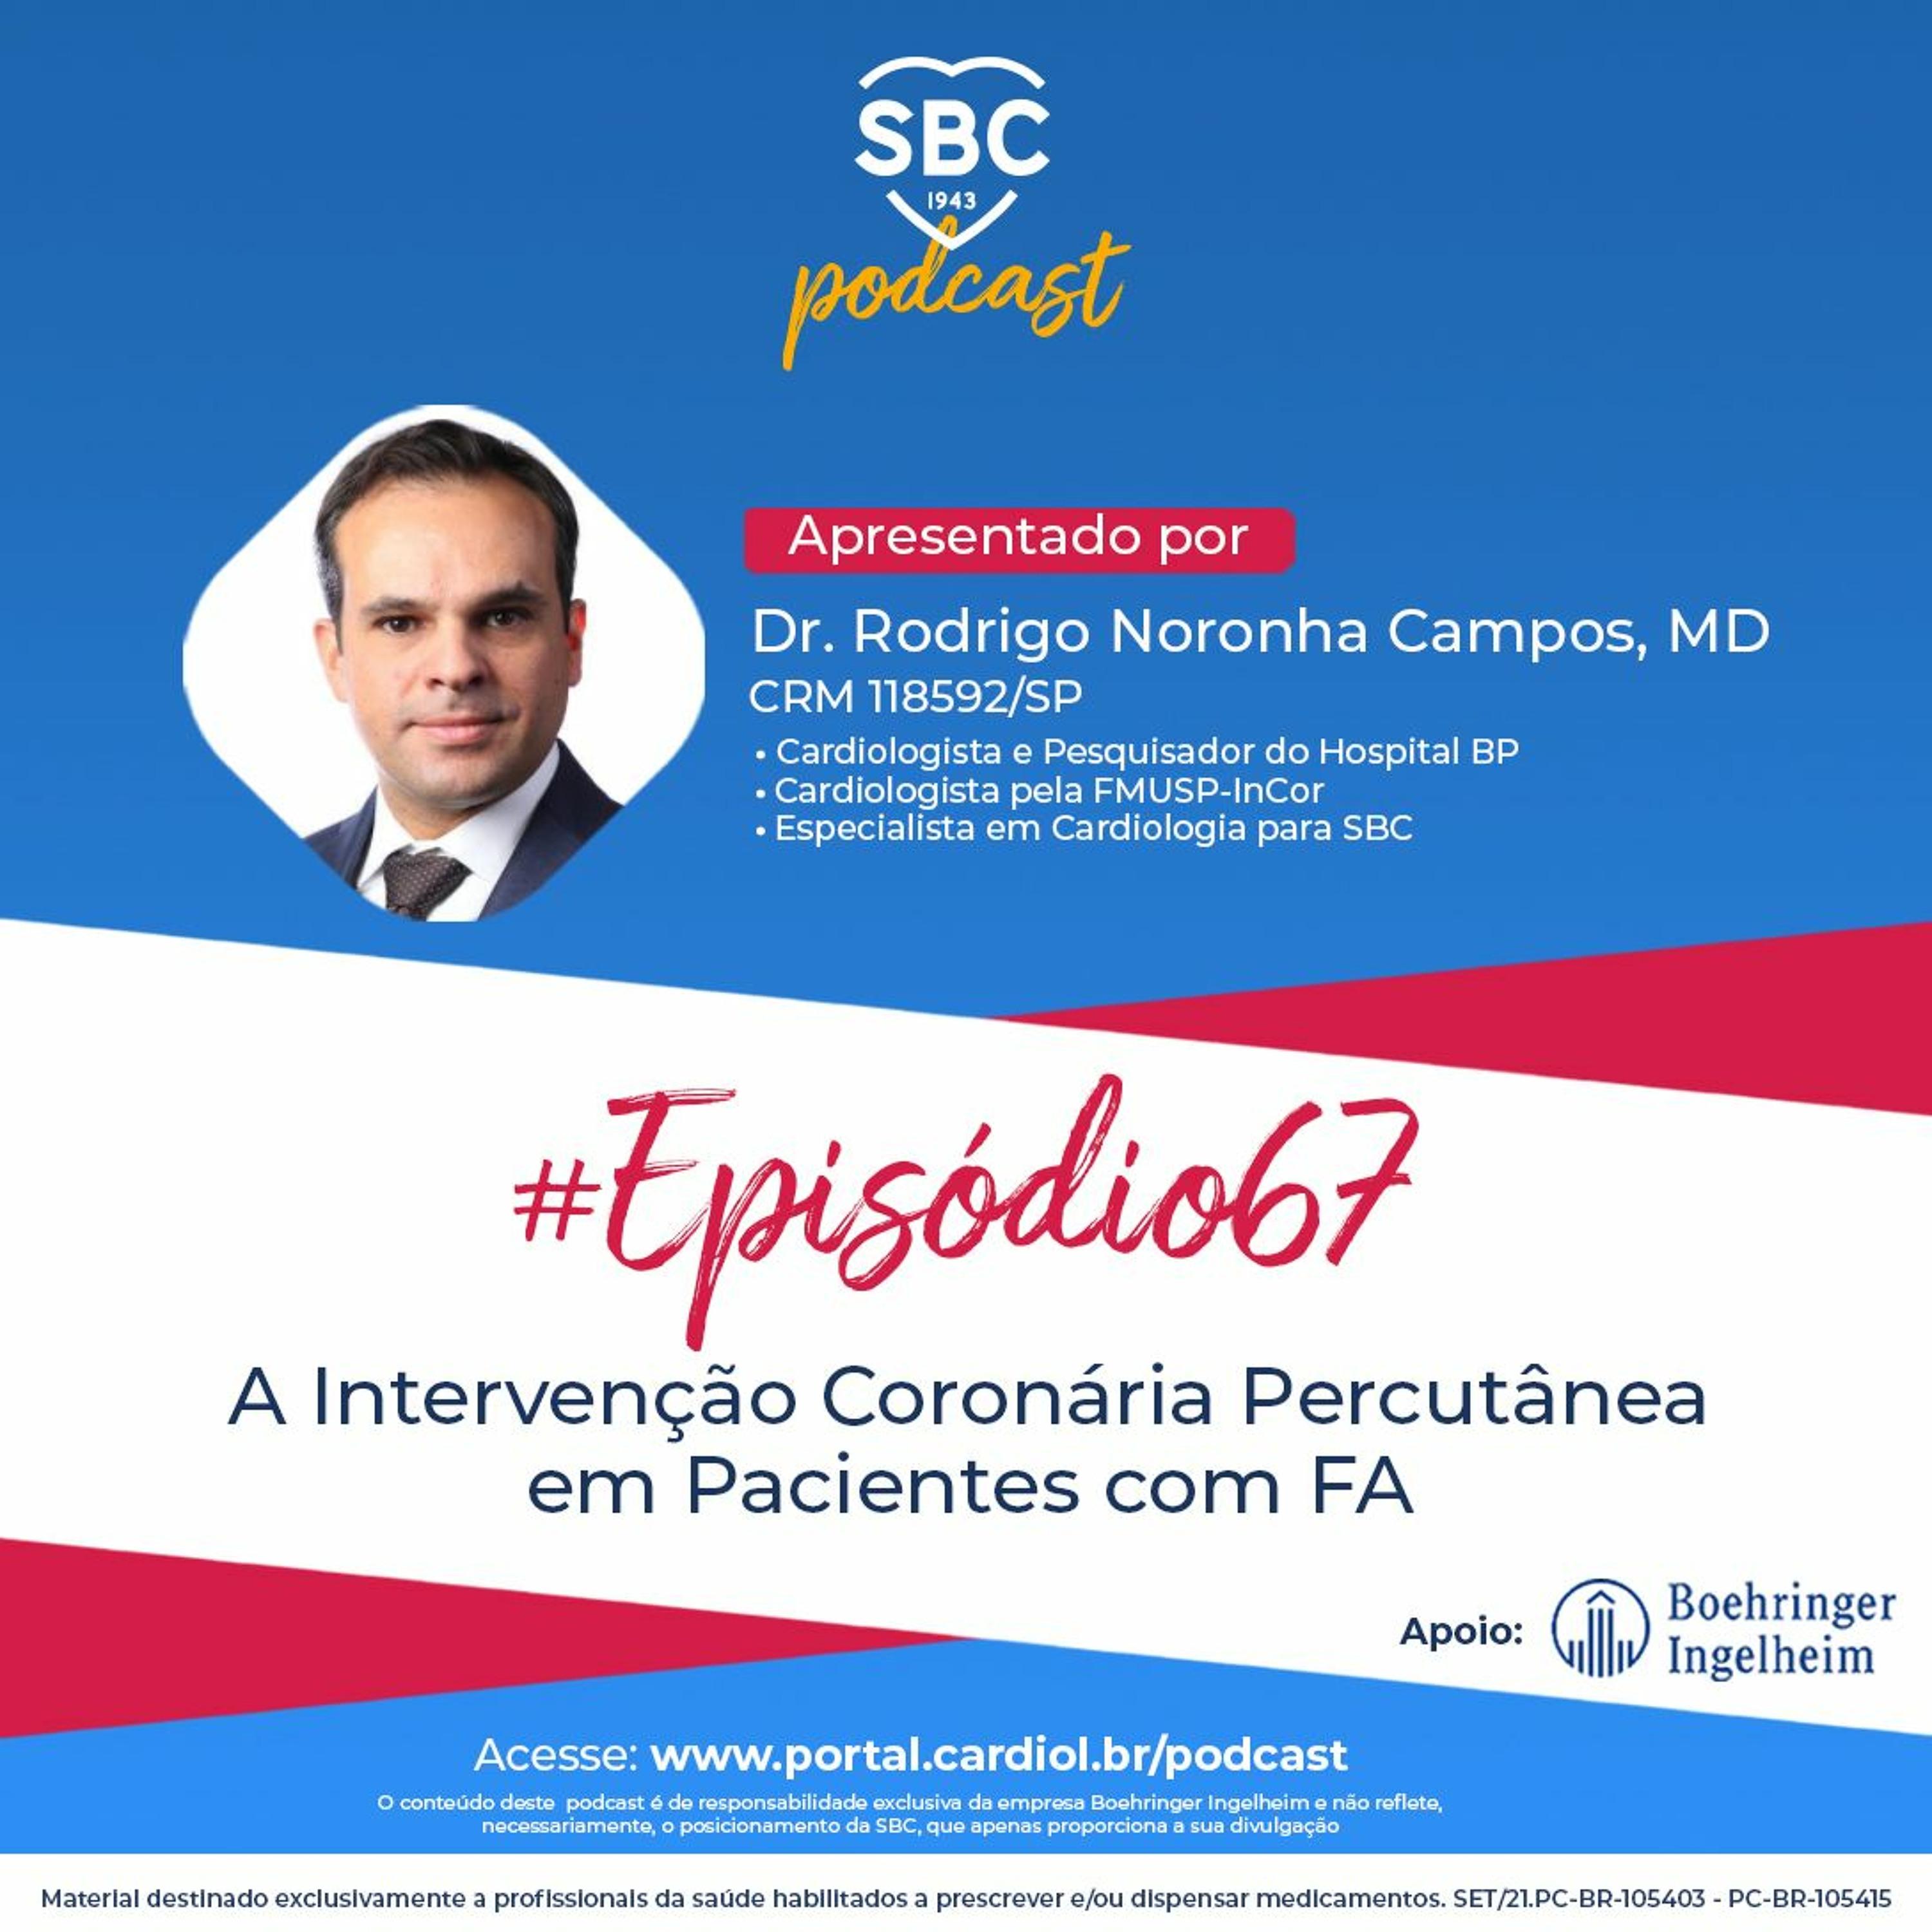 Podcast SBC 067 - A intervenção coronária percutânea em pacientes com FA by SBC - Sociedade Brasileira de Cardiologia